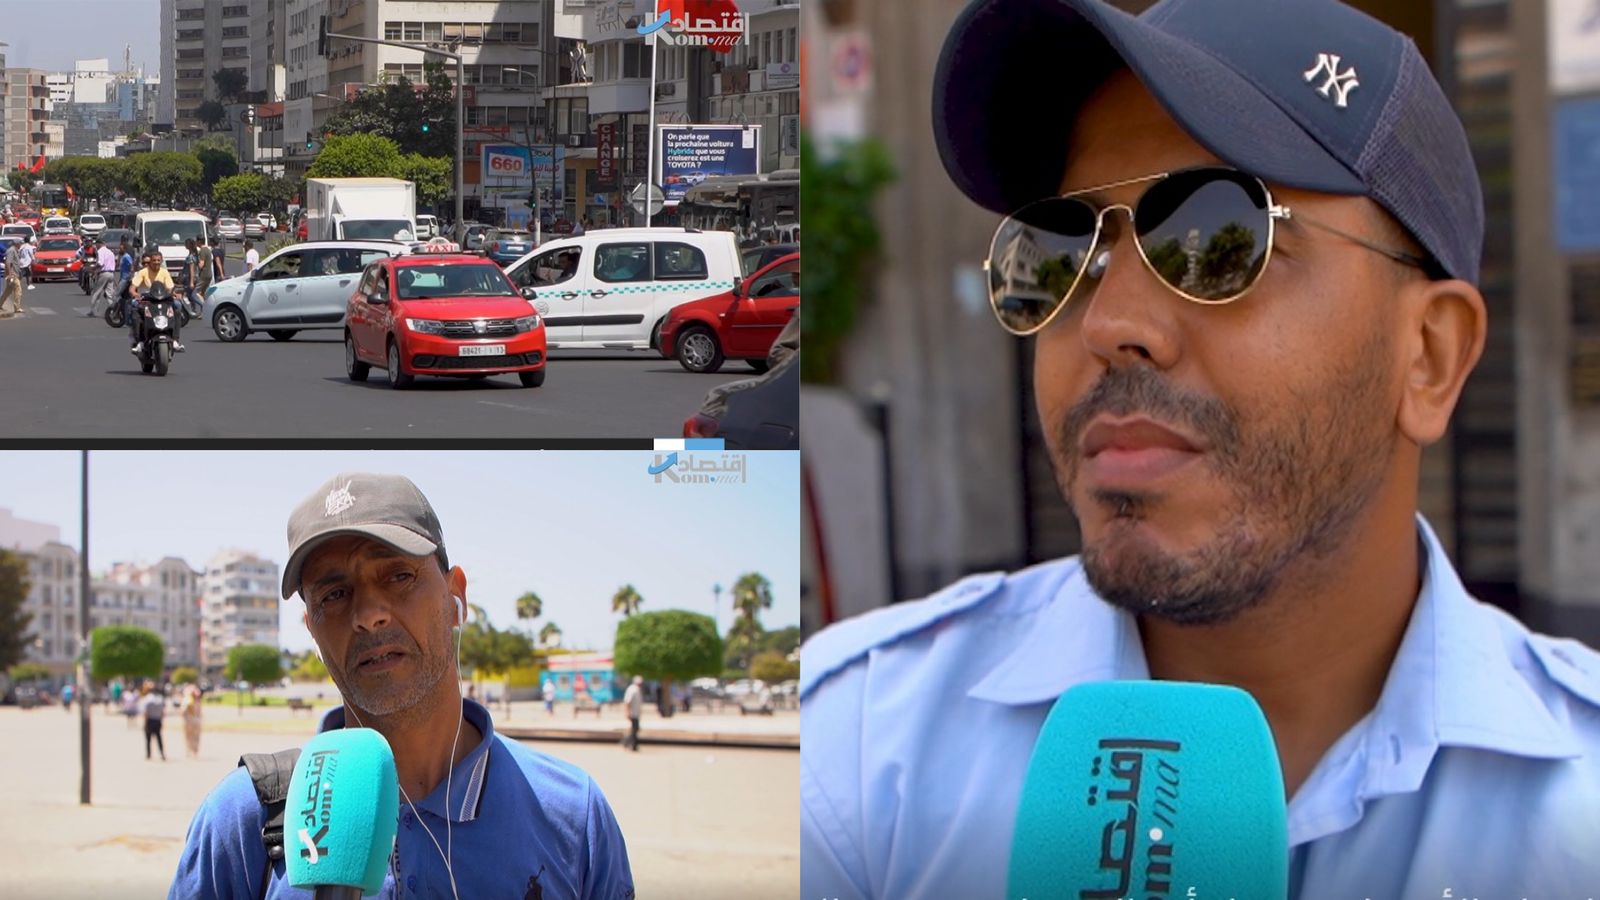 بالفيديو: هكذا تفاعل المغاربة مع غلاء الأسعار وموقف الحكومة